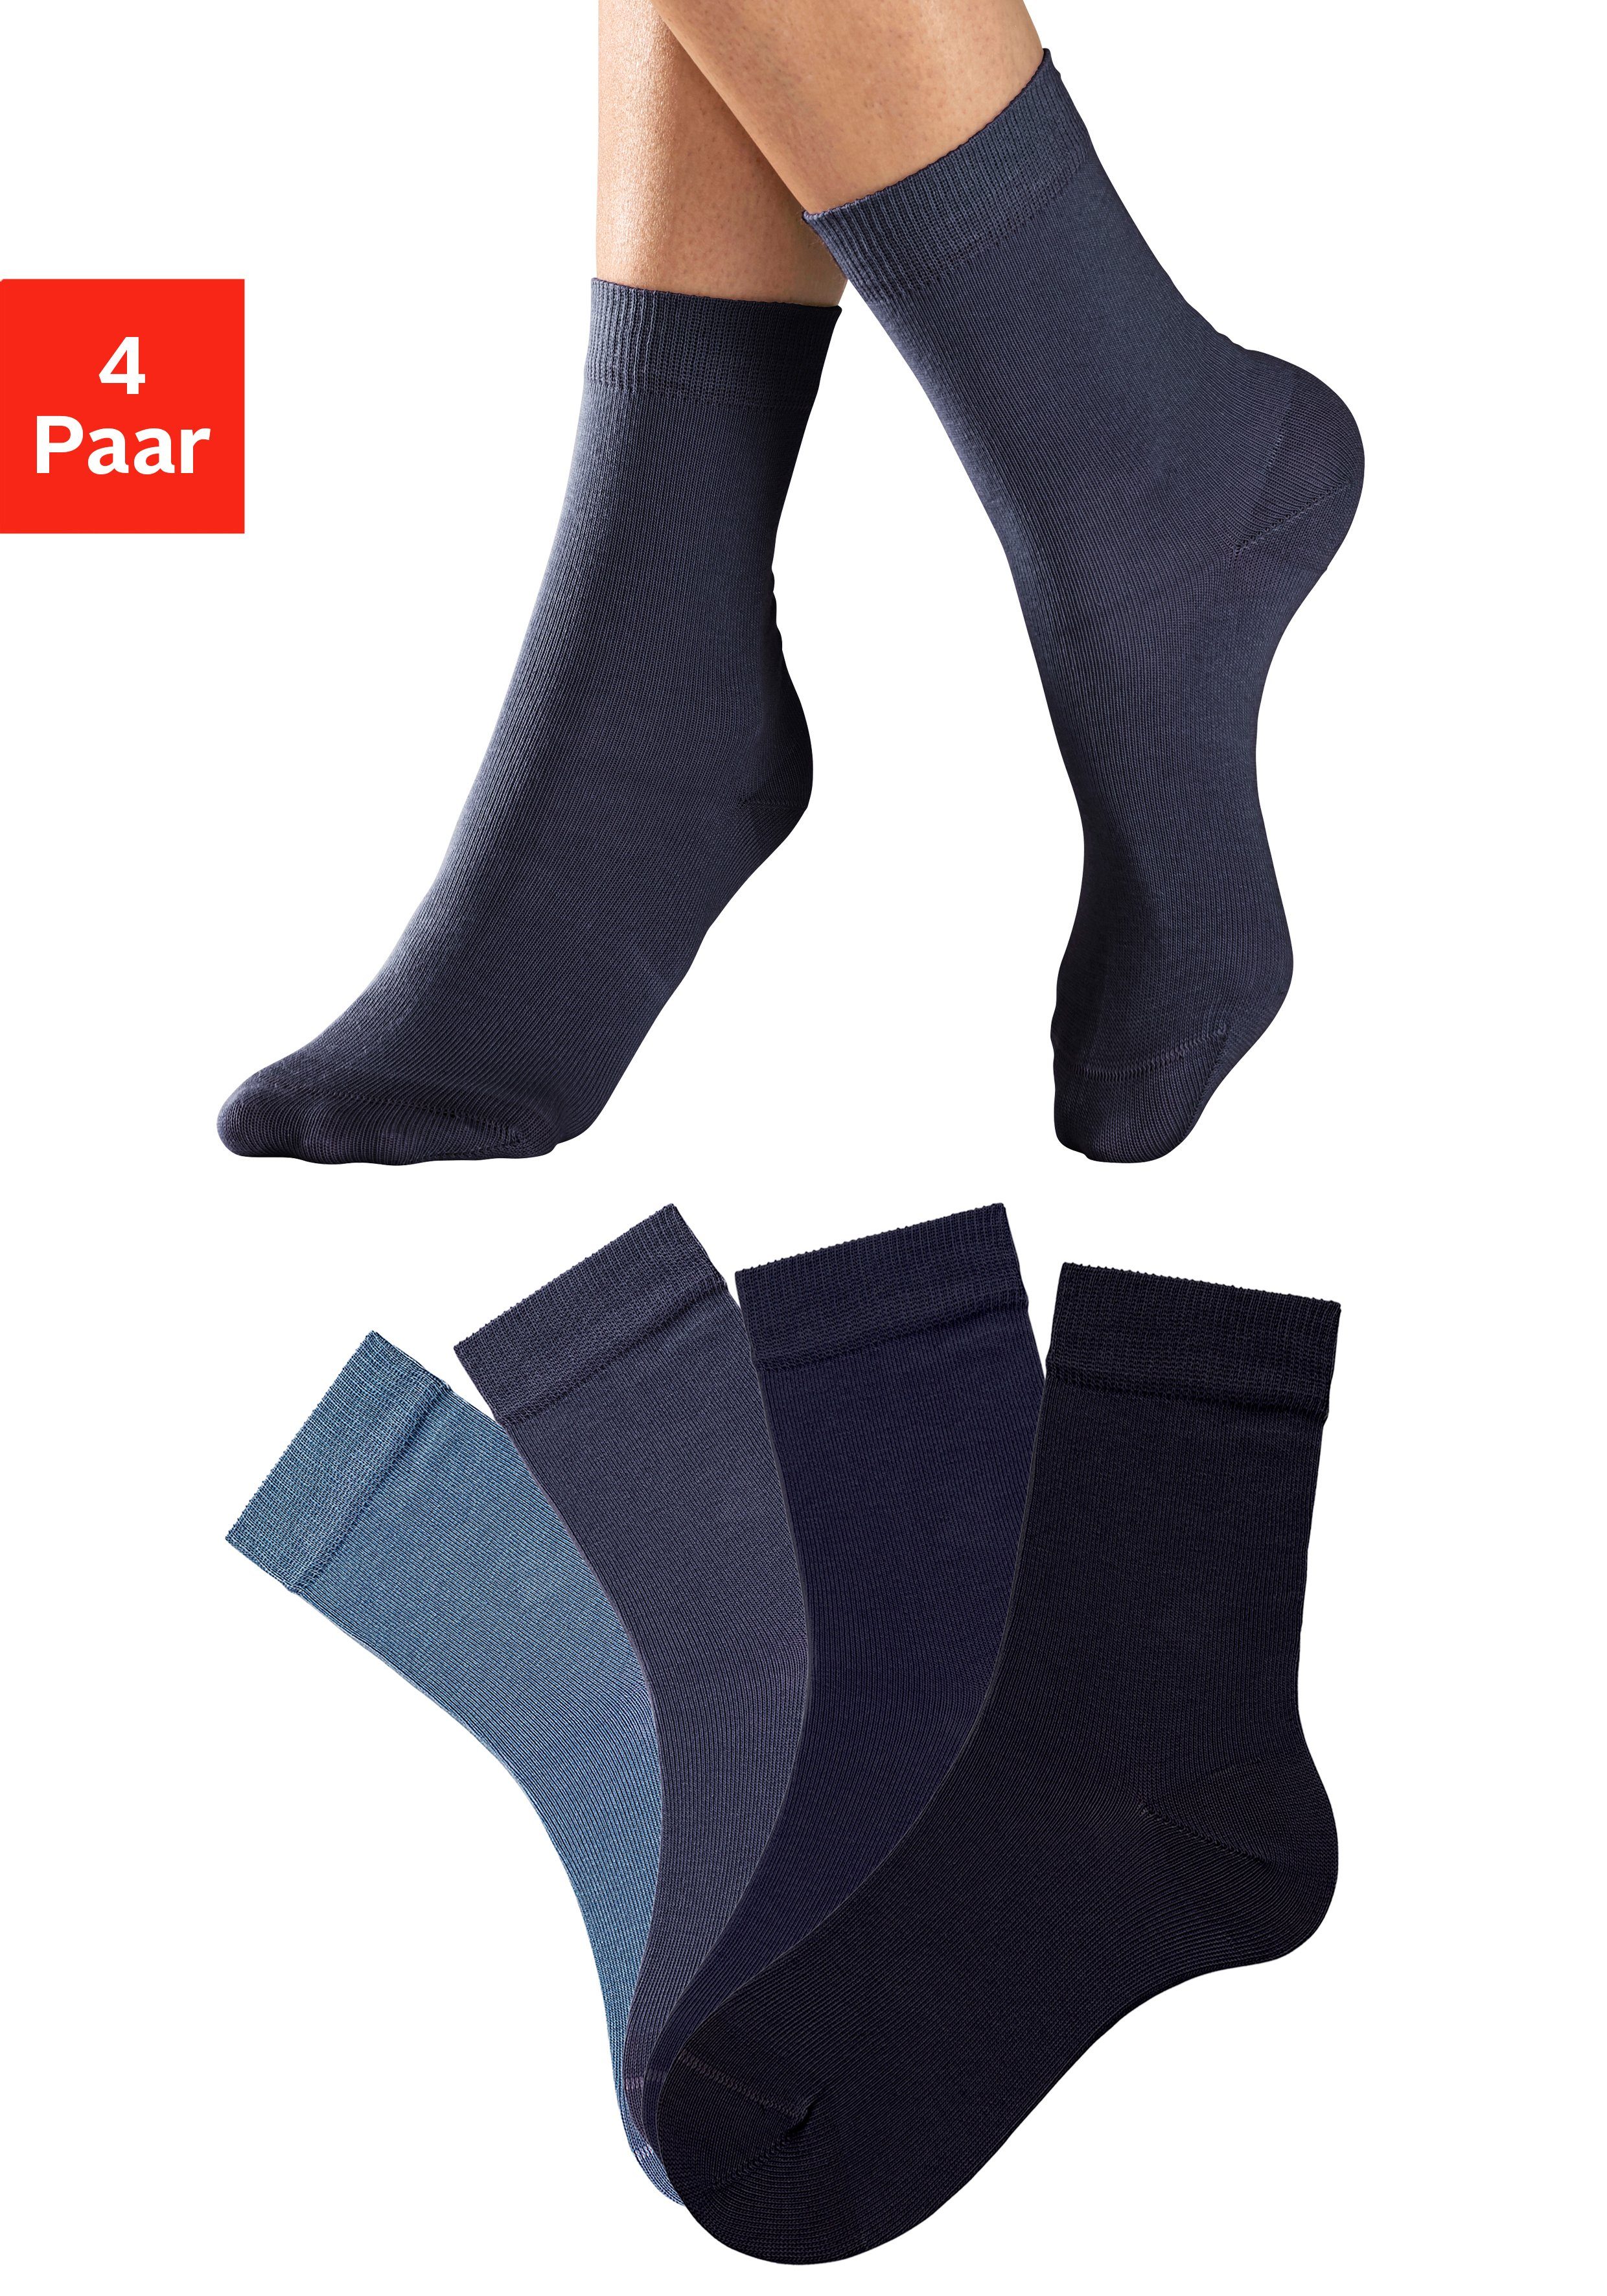 H.I.S Socken (Set, 4-Paar) in unterschiedlichen Farbzusammenstellungen jeans-blau